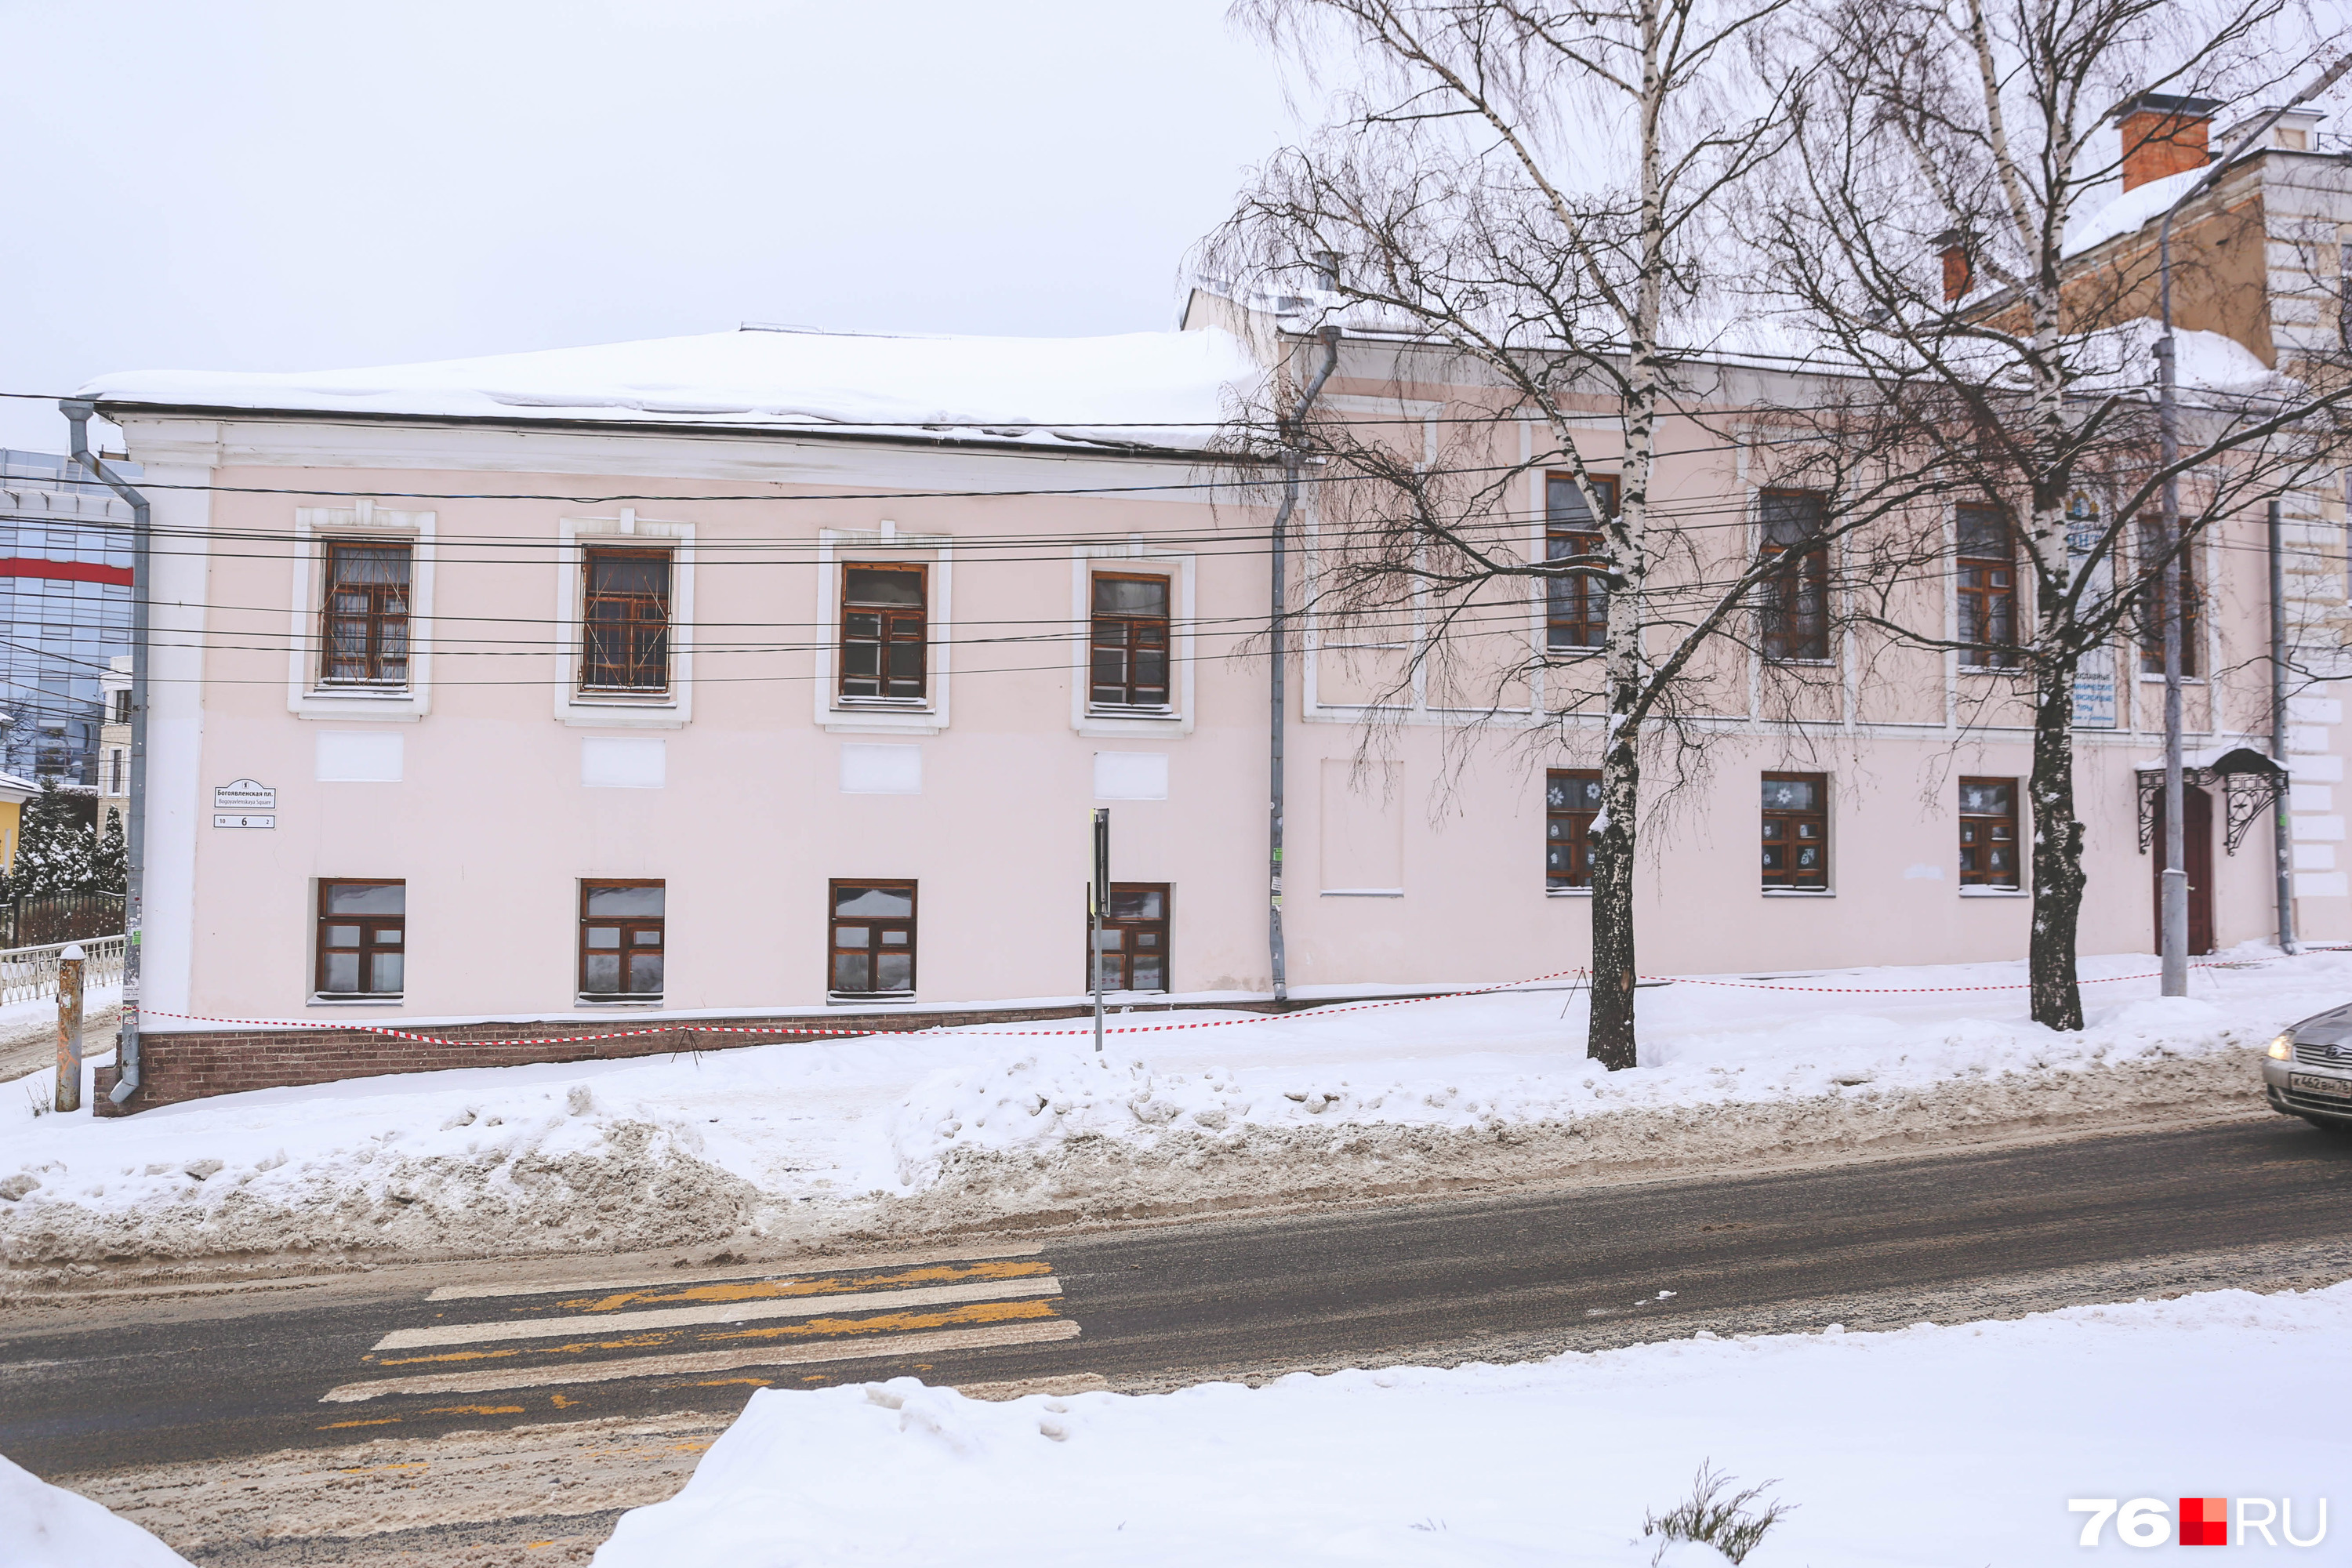 Епархия также владеет зданием на Богоявленской, 6